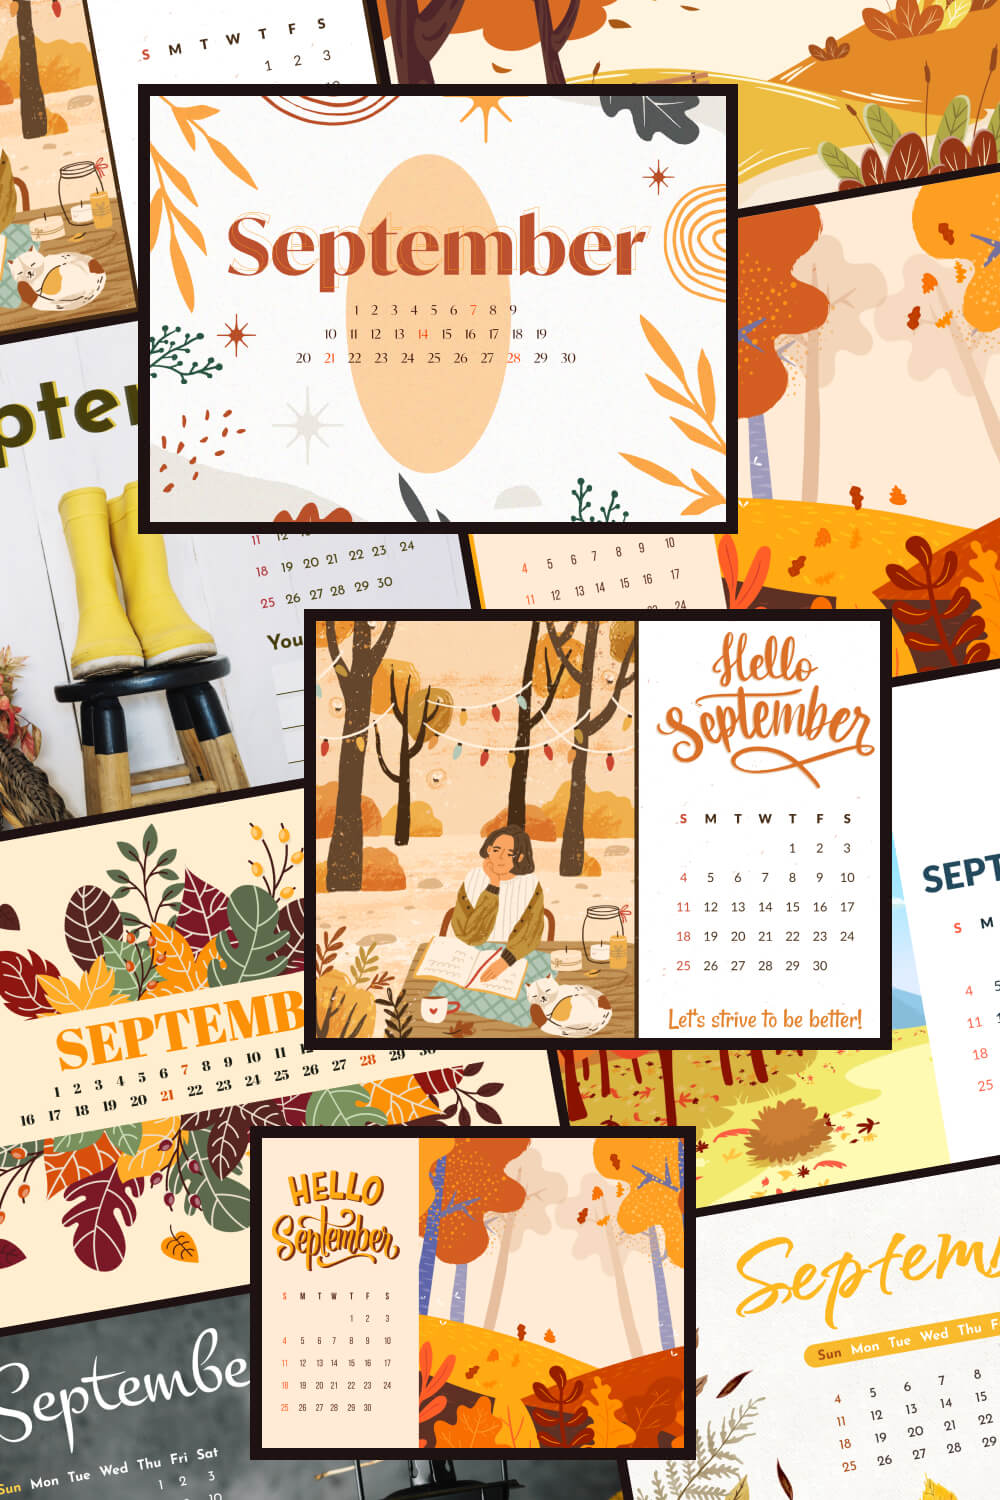 10 Free Editable September Calendars Pinterest Image.